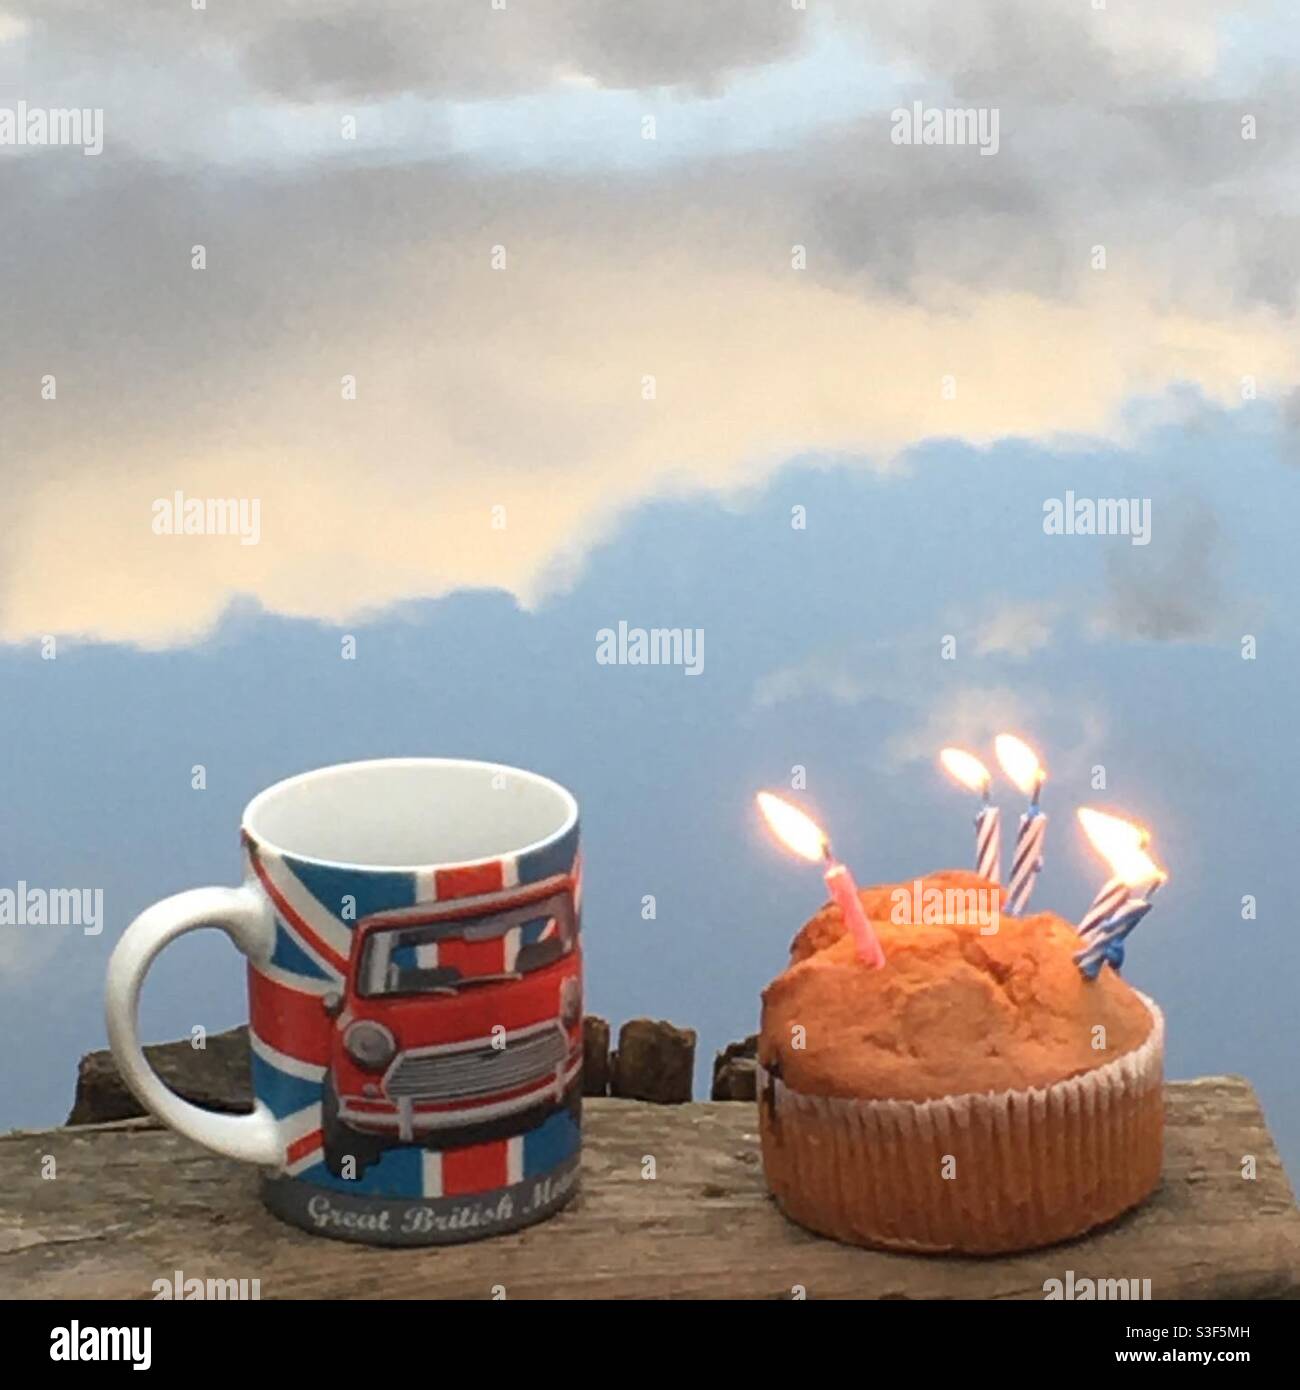 Nous voulions être près de chez vous pour votre anniversaire, café et gâteau au bord de votre lac x. Banque D'Images